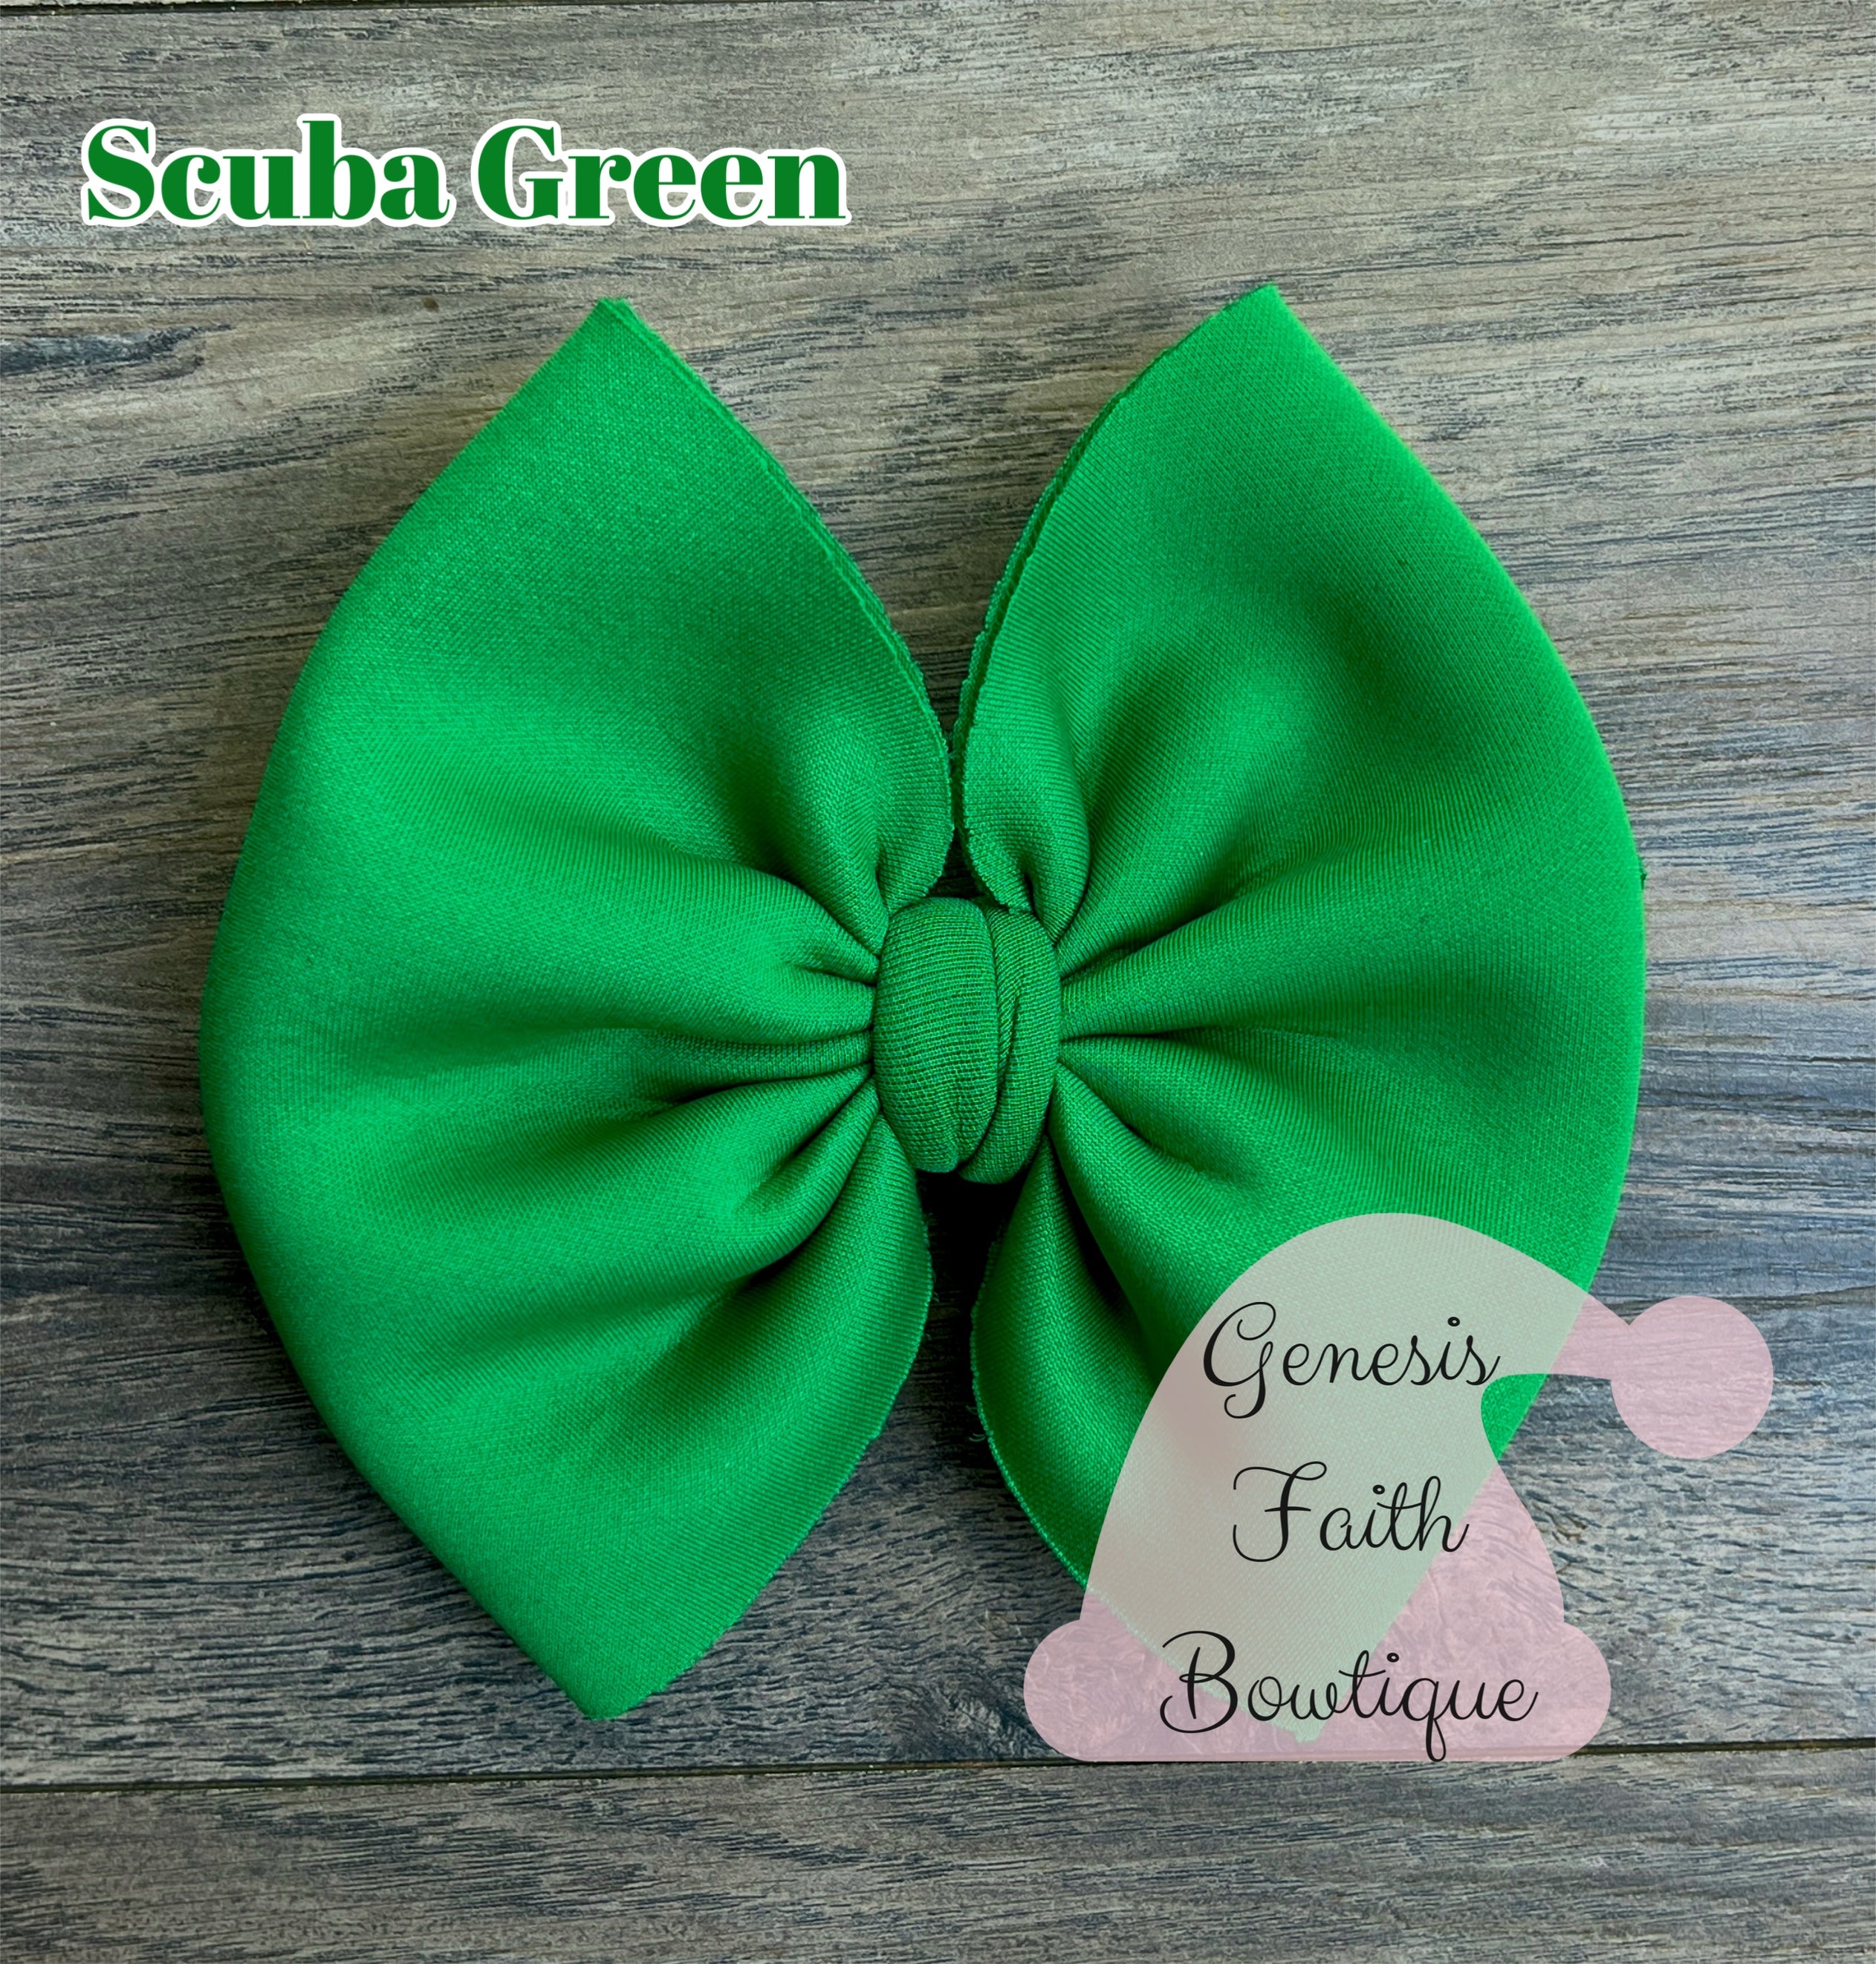 Scuba Green – Genesis Faith Bowtique